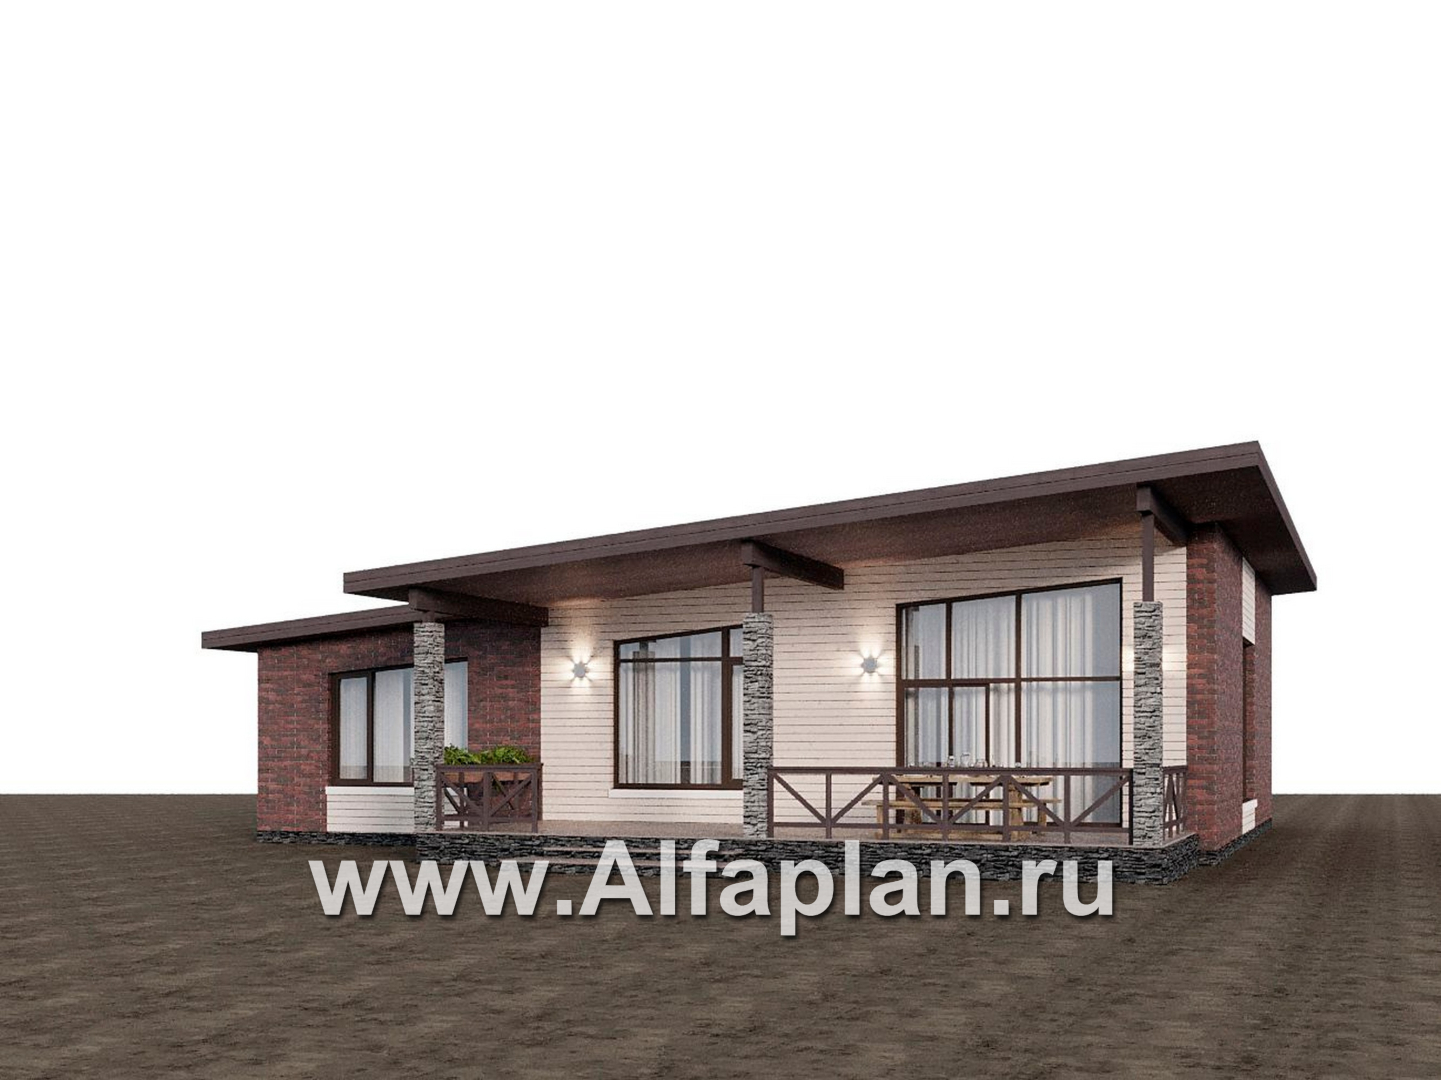 Проекты домов Альфаплан - "Стрелец" -проект газобетонного одноэтажного дома с односкатной крышей - дополнительное изображение №9